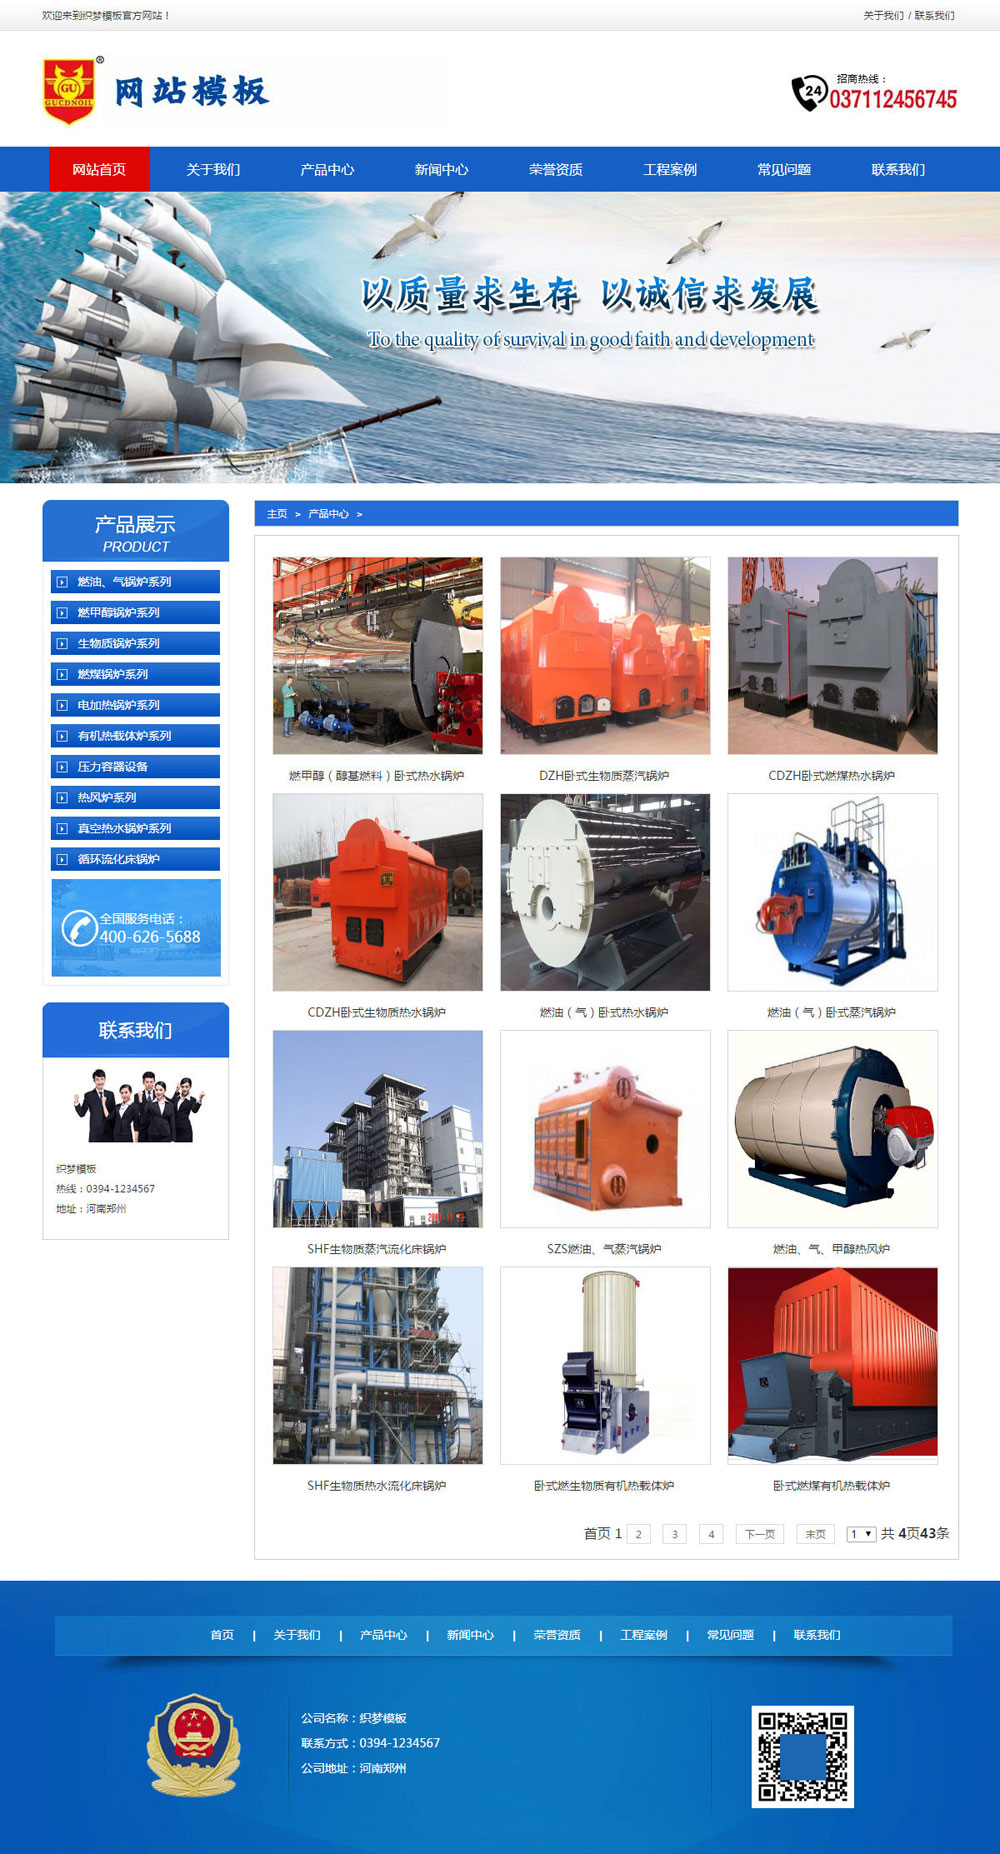 蓝色润滑油生产企业网站织梦模板